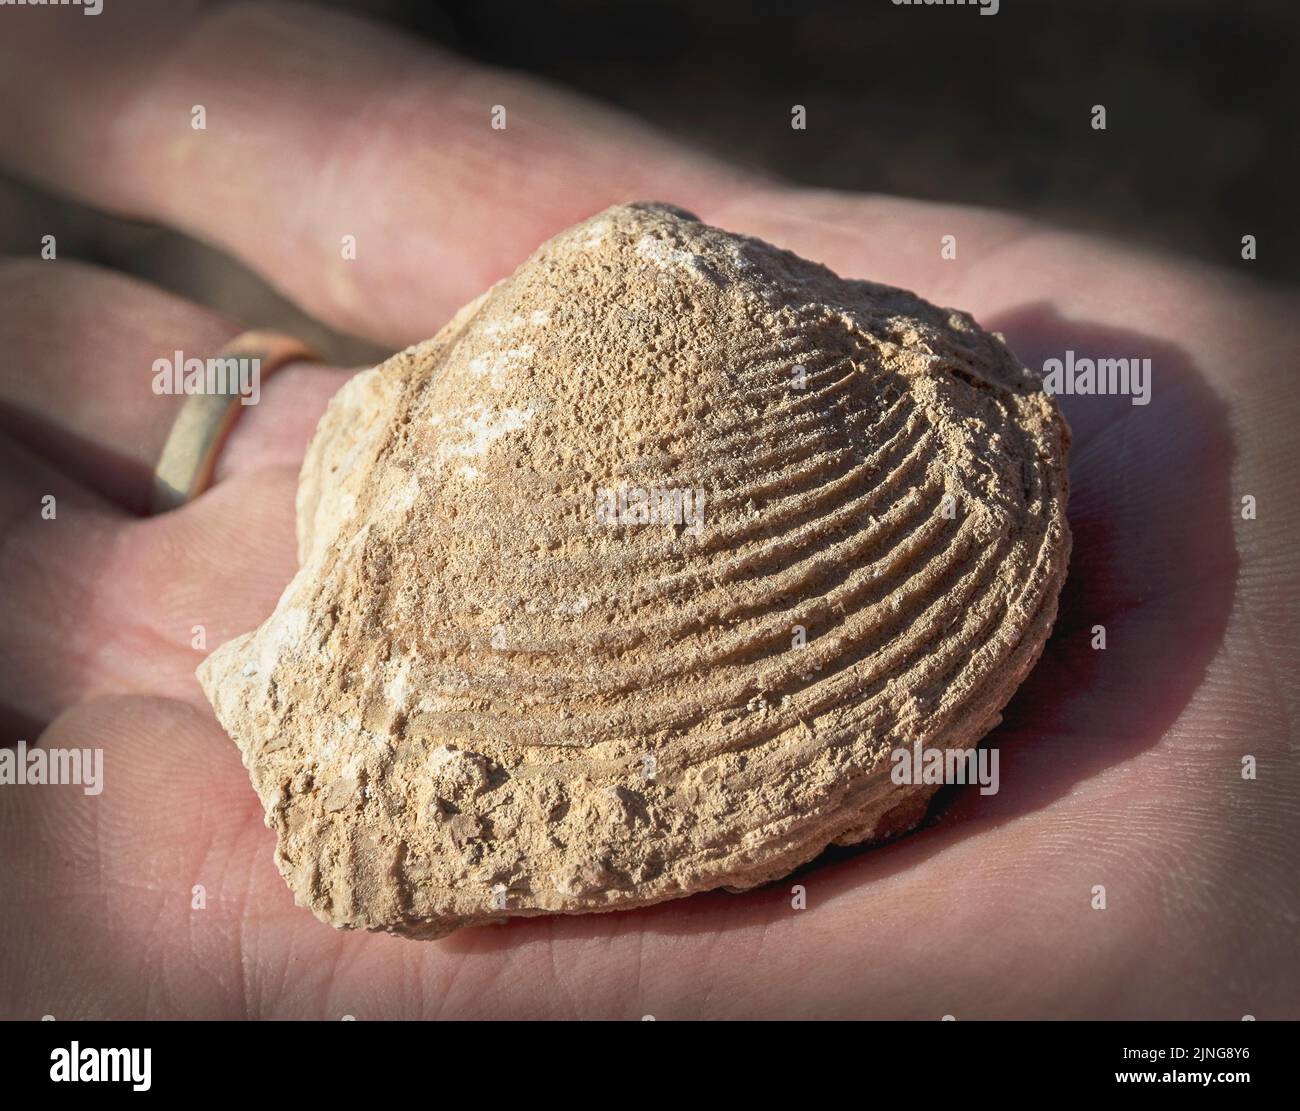 Senoische Periode Clam Fossil auf einer Hand zur Größenreferenz zeigt tiefe detaillierte Grate im Kalkstein Stockfoto